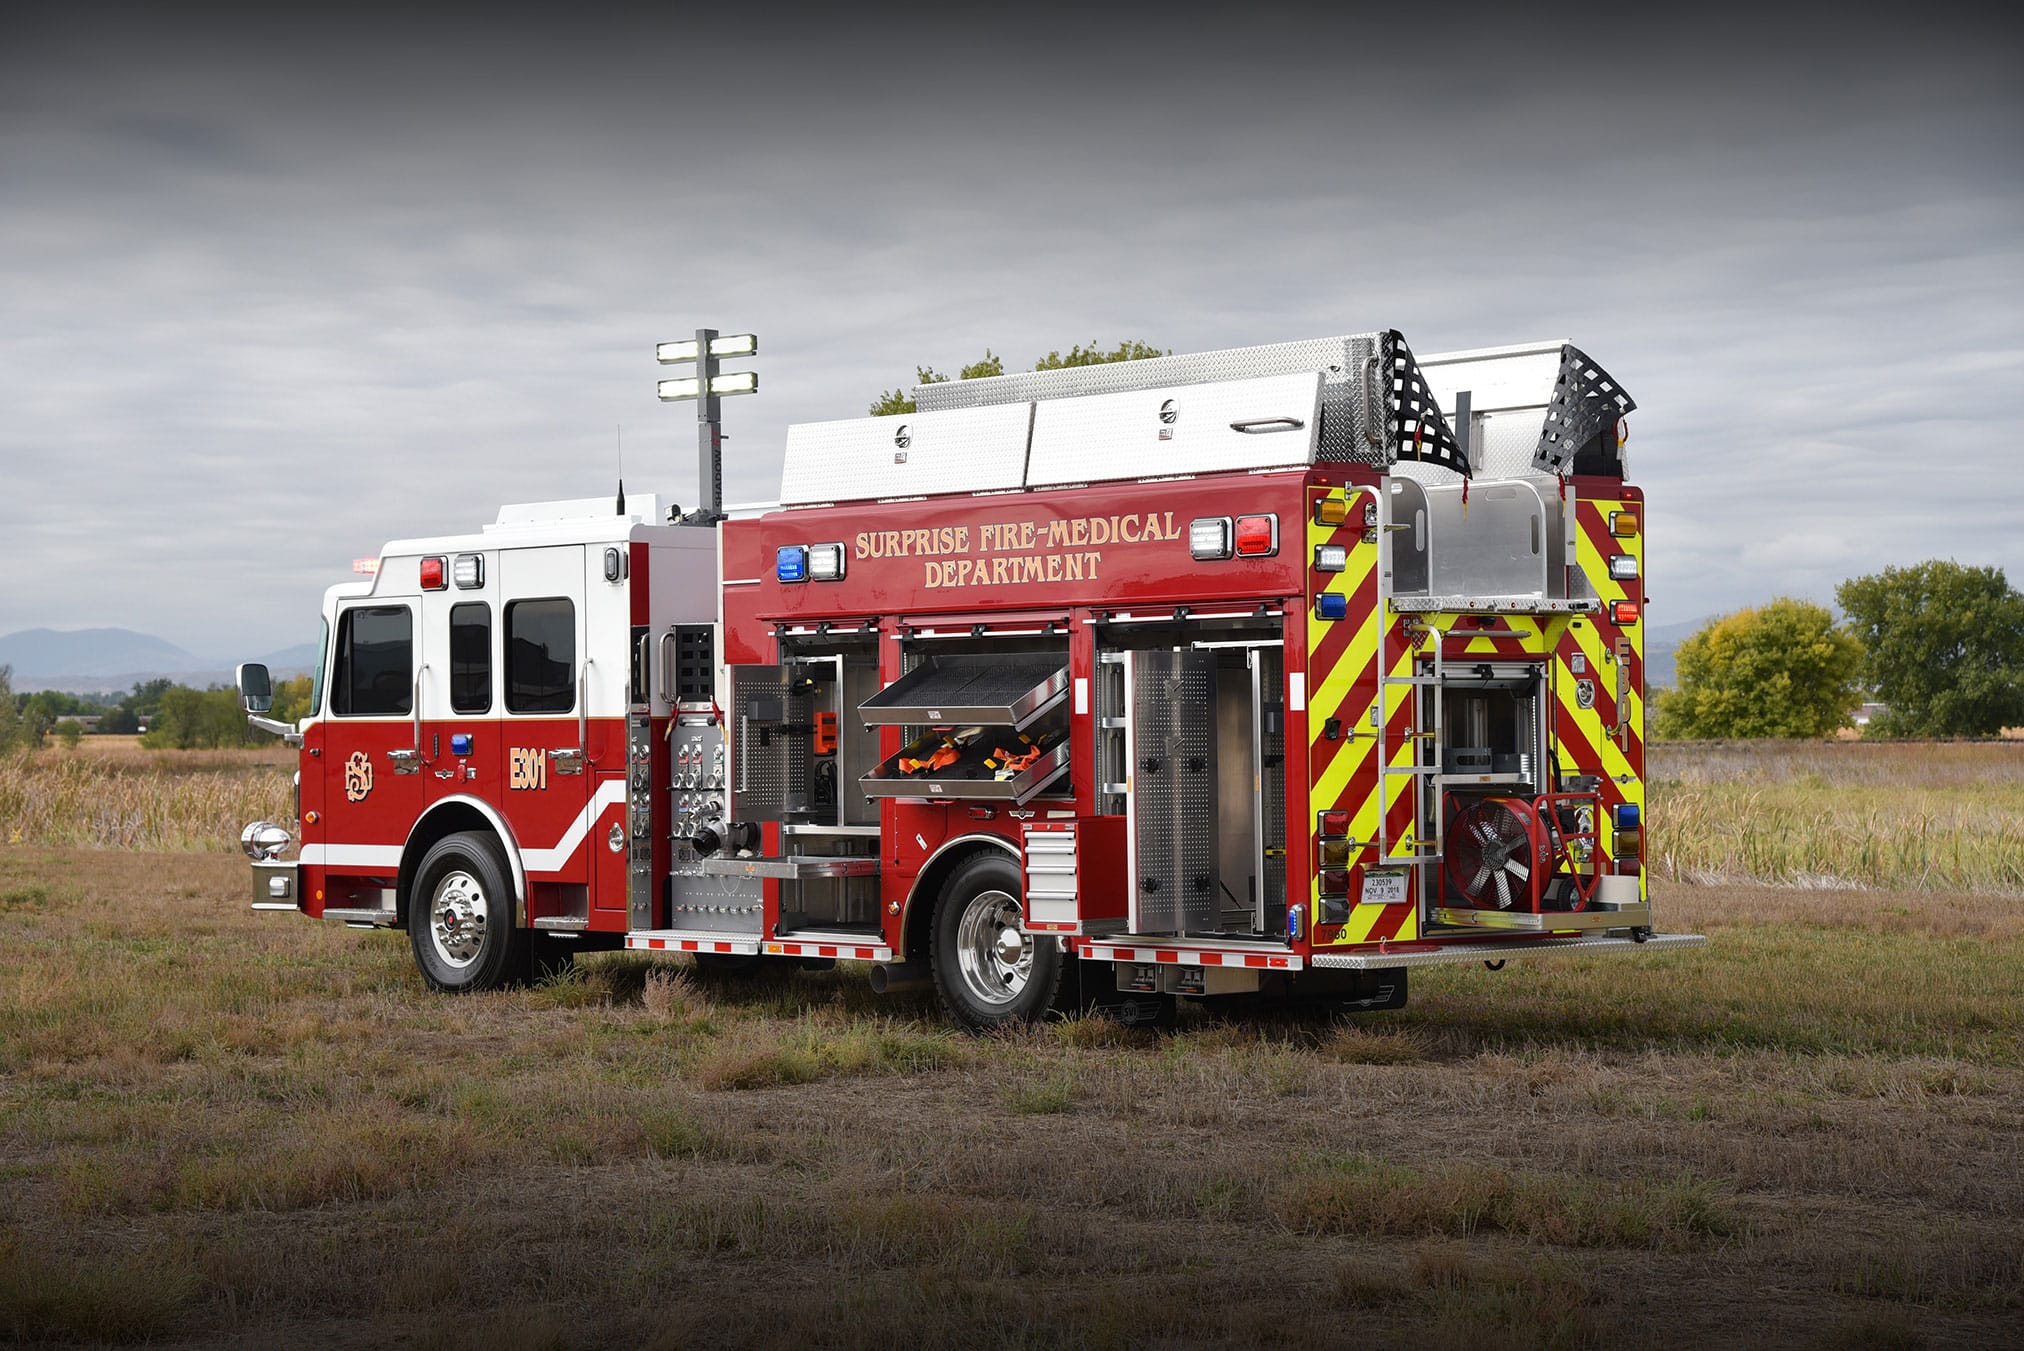 Featured image for “Surprise, AZ Fire Department Rescue Pumper #1058”